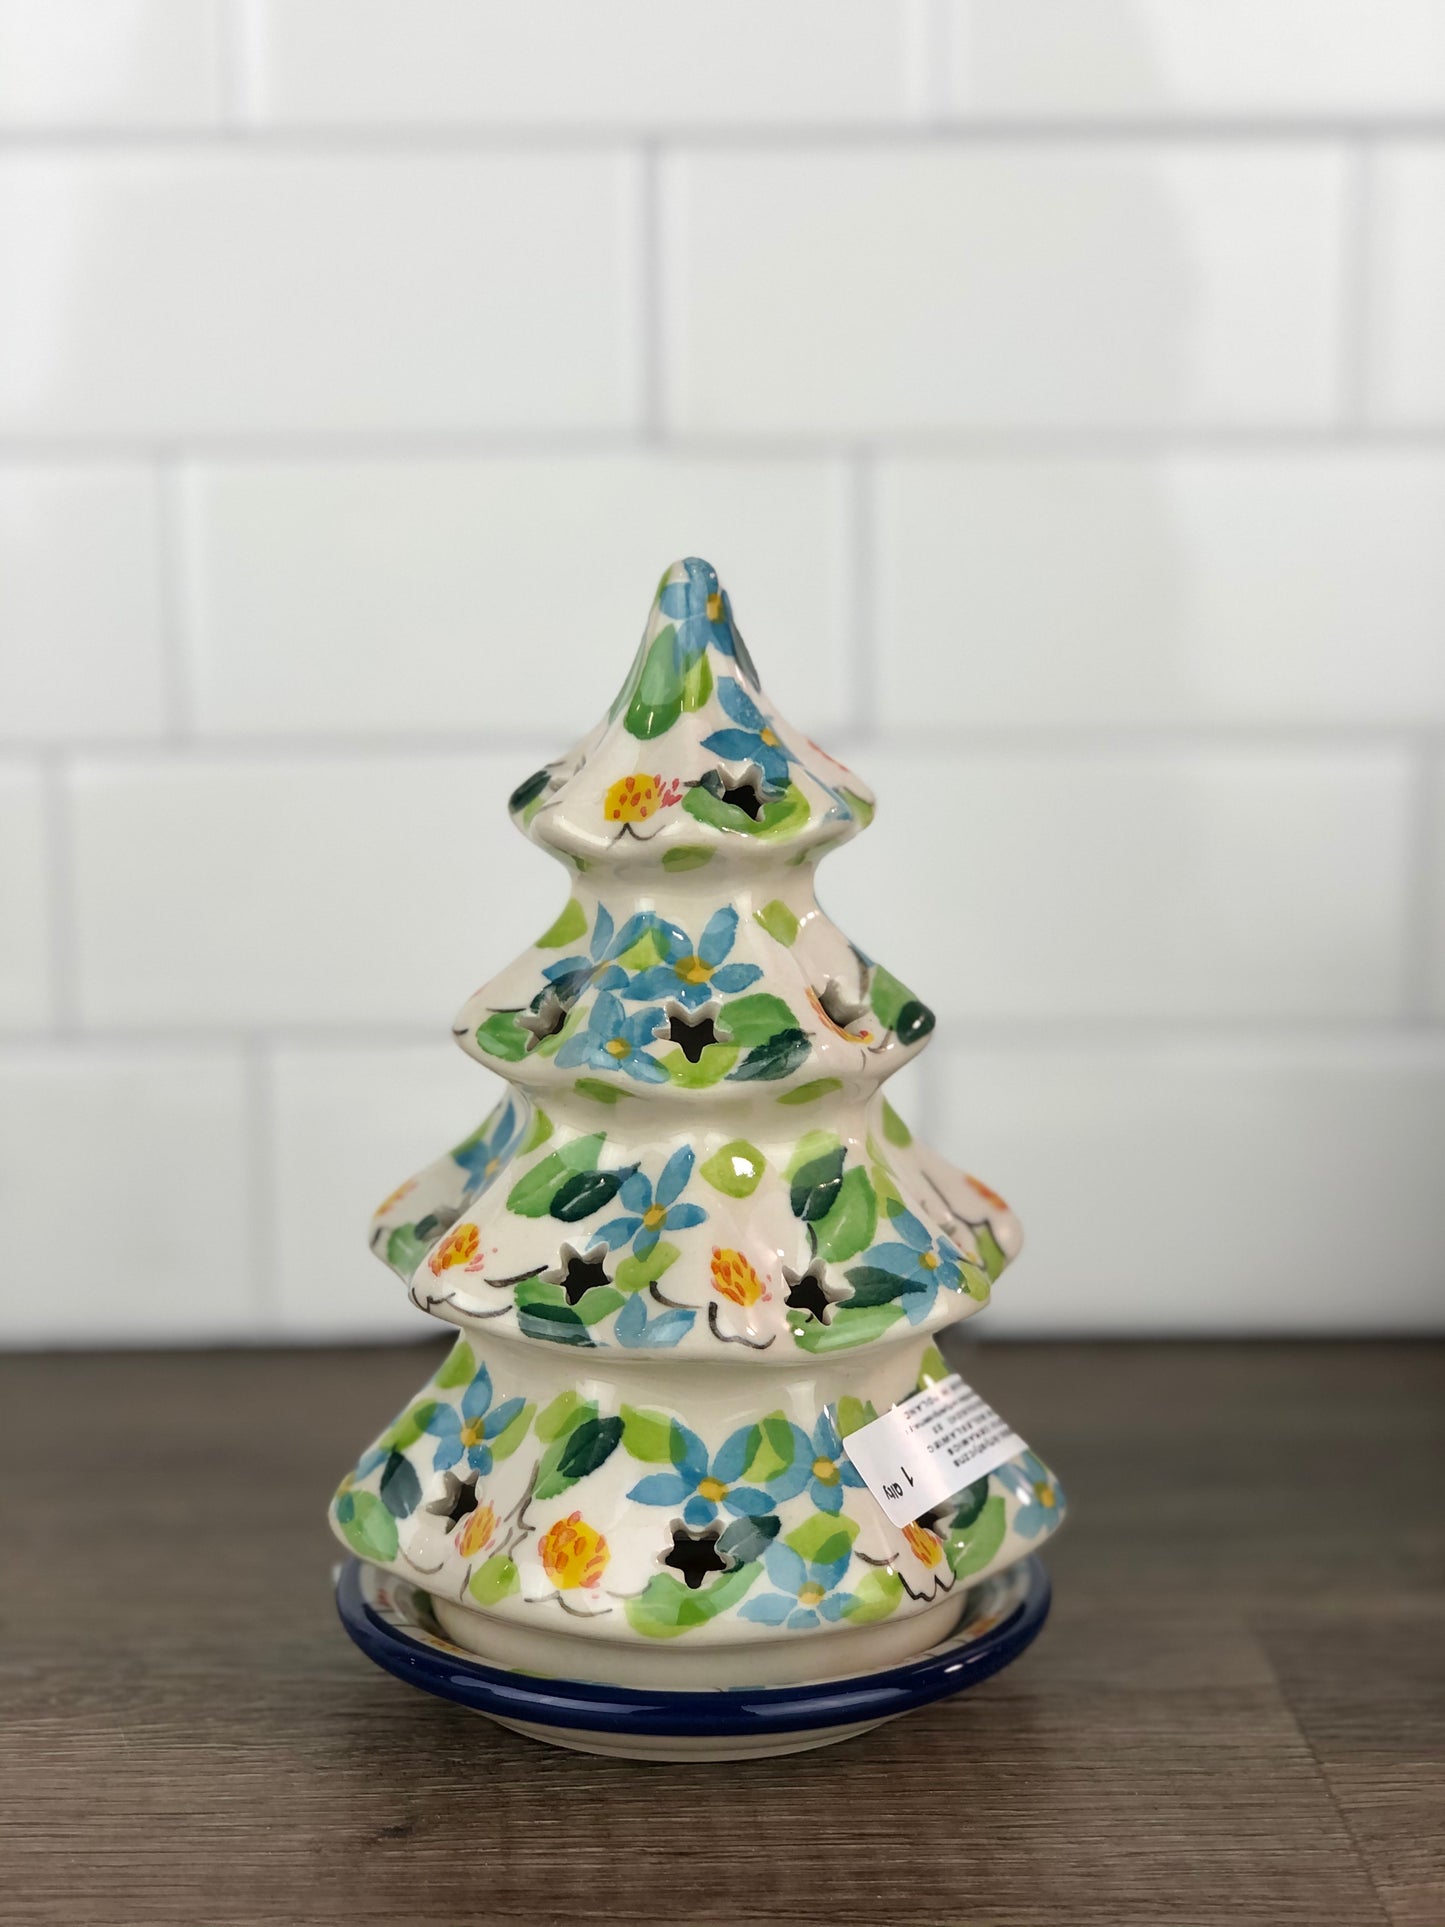 Small 6" Unikat Christmas Tree - Shape 512 - Pattern U4902